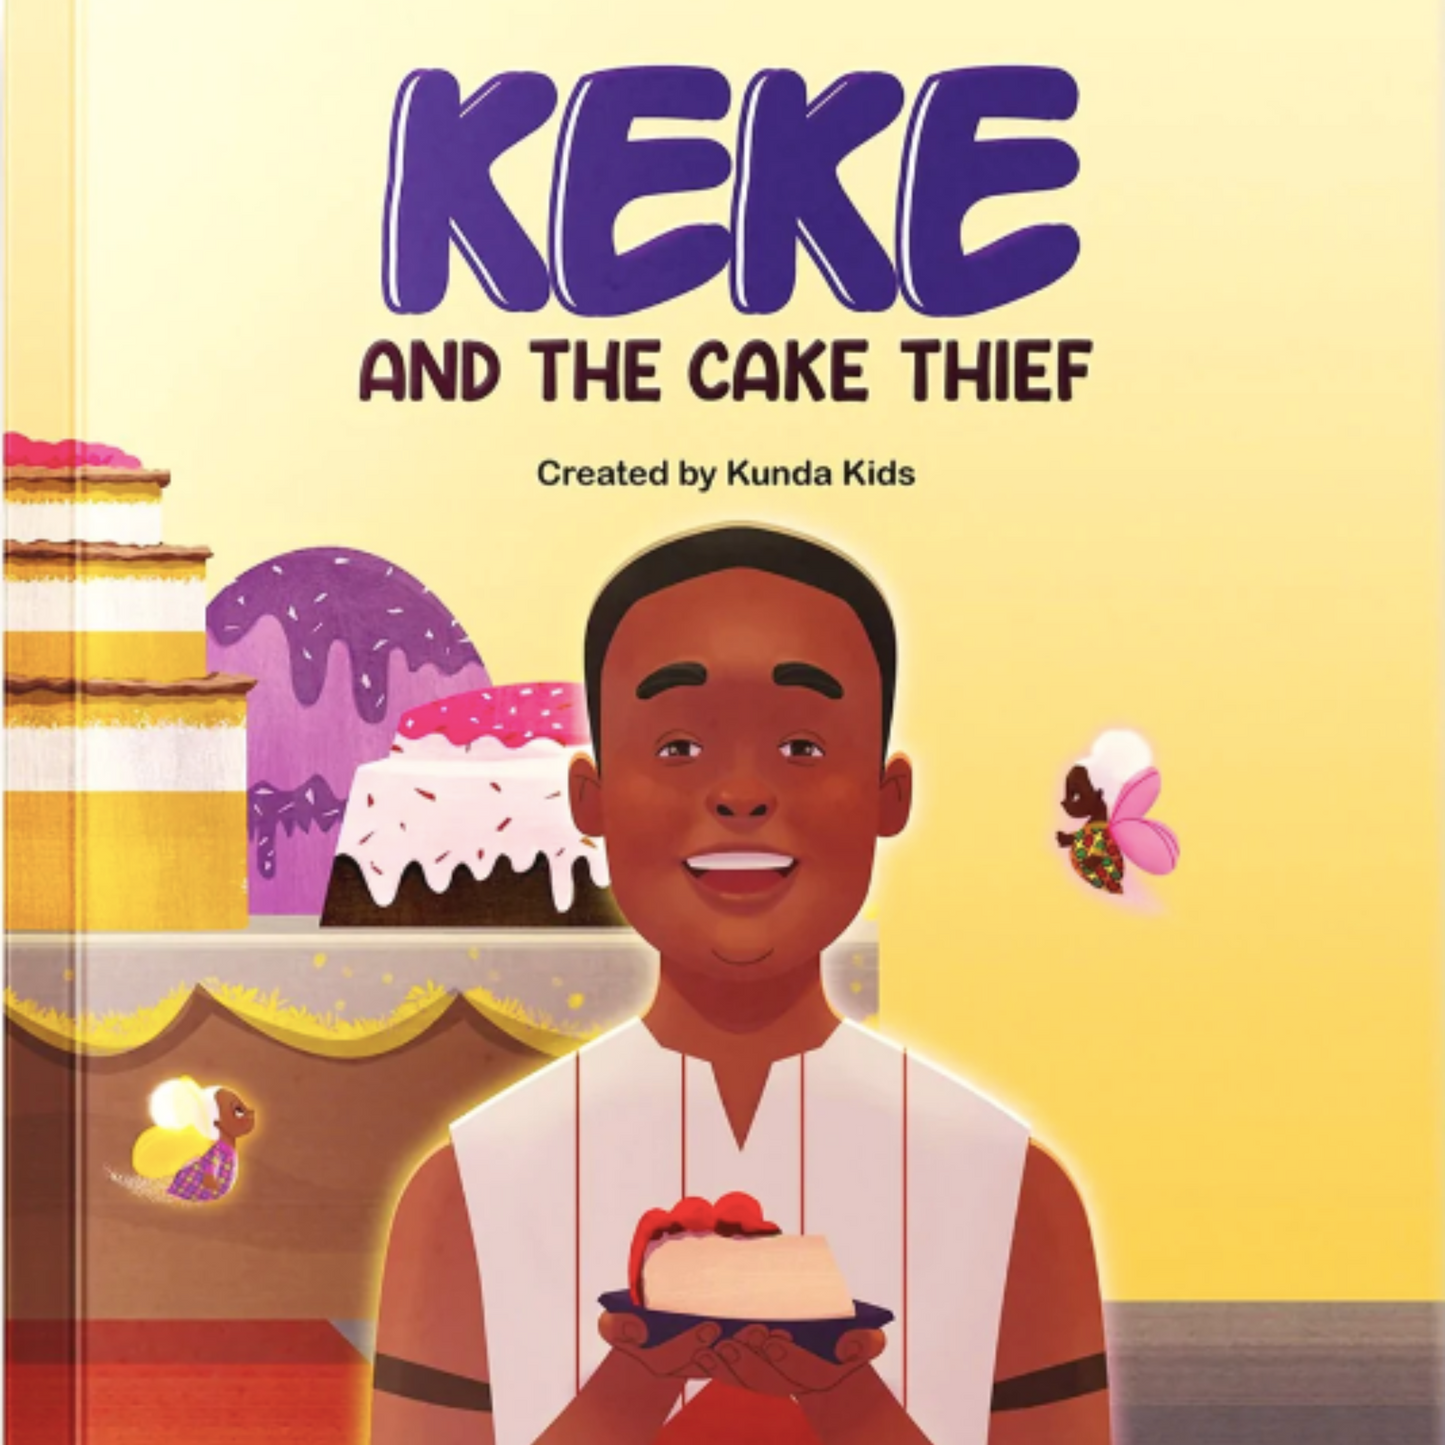 Keke and the Cake Thief